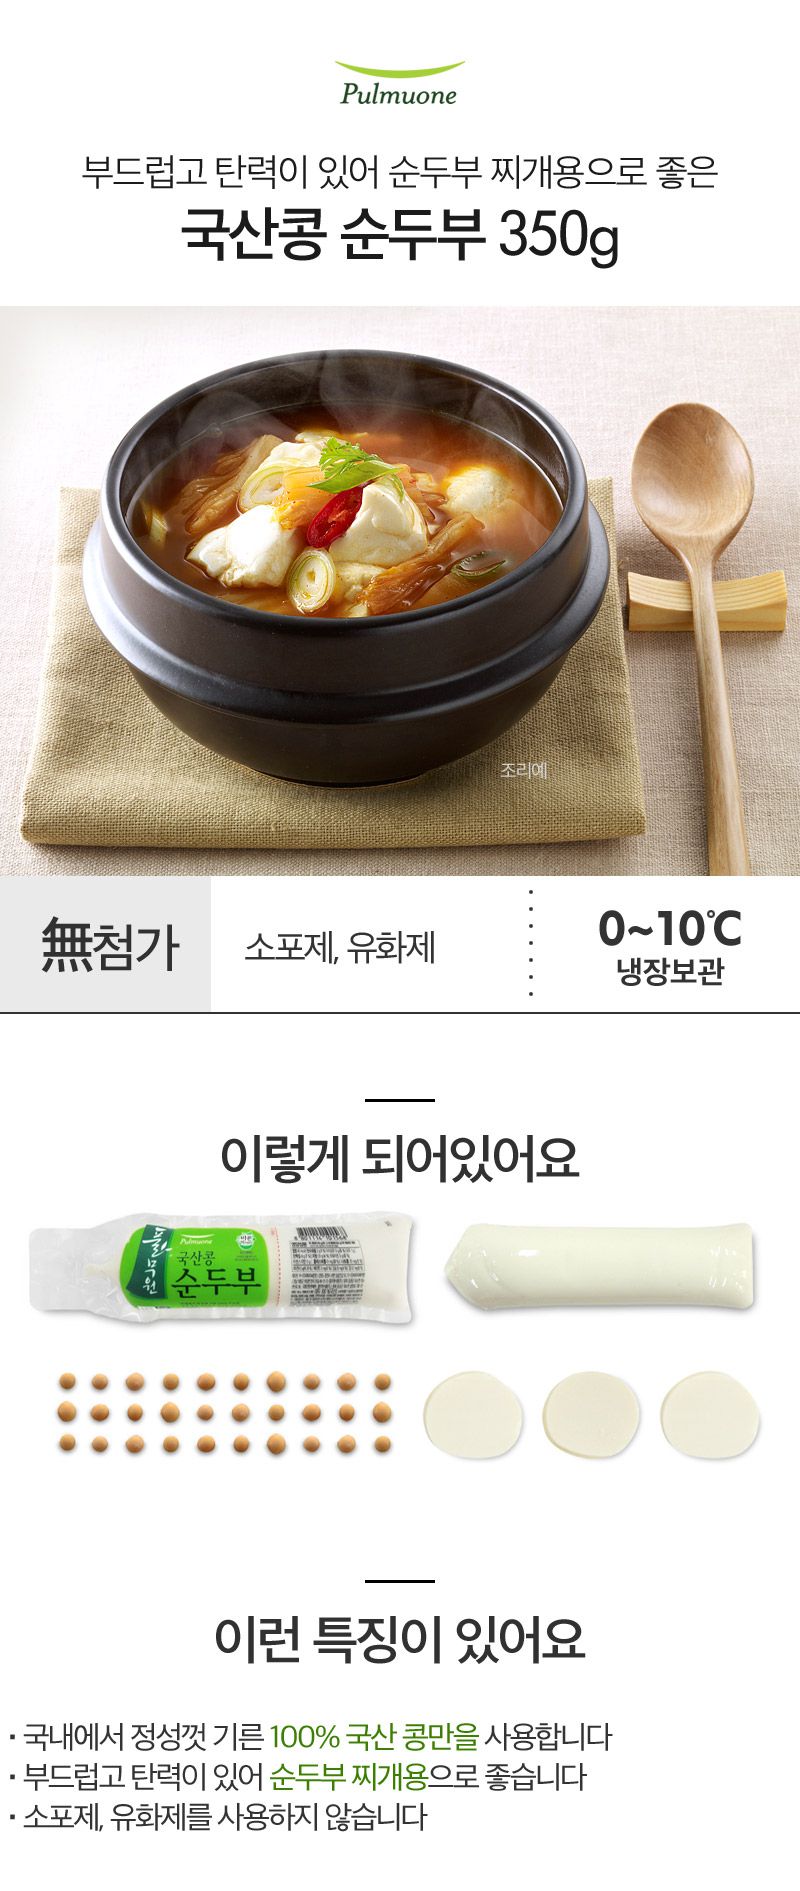 韓國食品-[풀무원] 순두부 350g